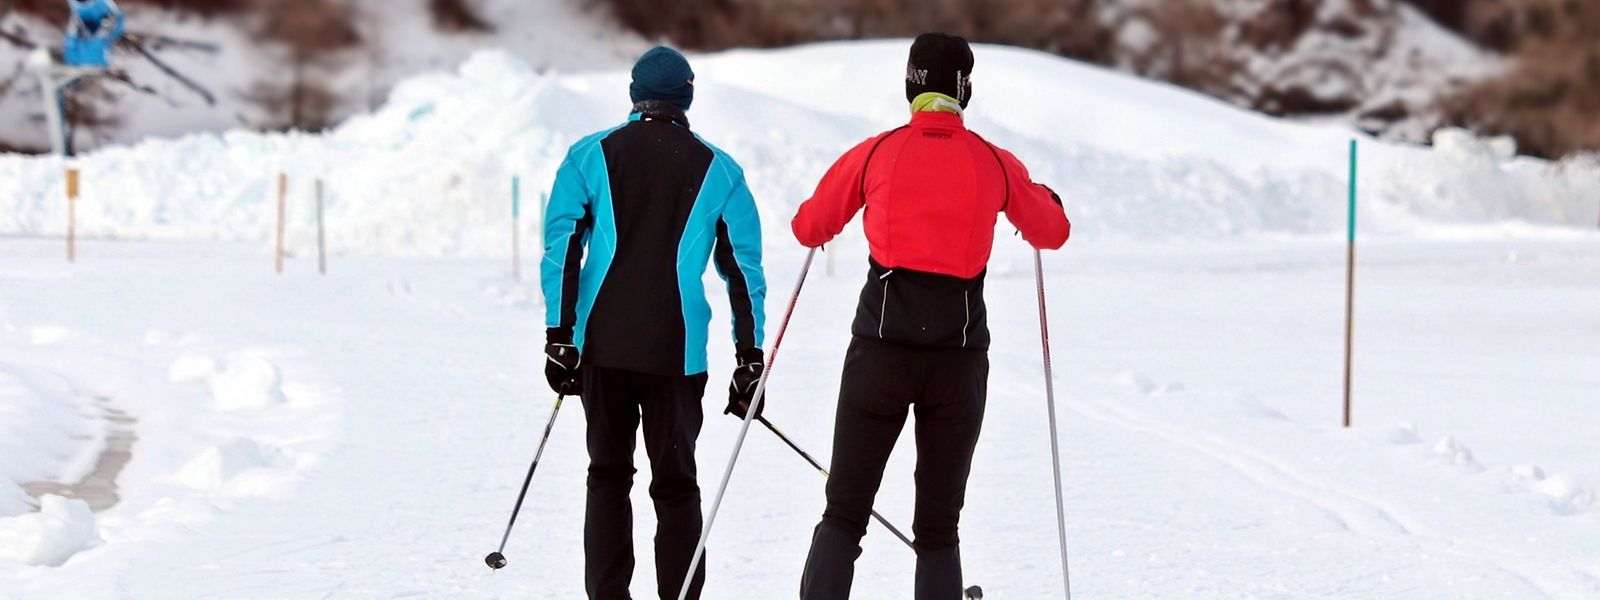 Skifahren in Mamer: im Rahmen der "Winter Moments" soll dies möglich sein. Die Idee ruft jedoch heftige Kritik hervor.